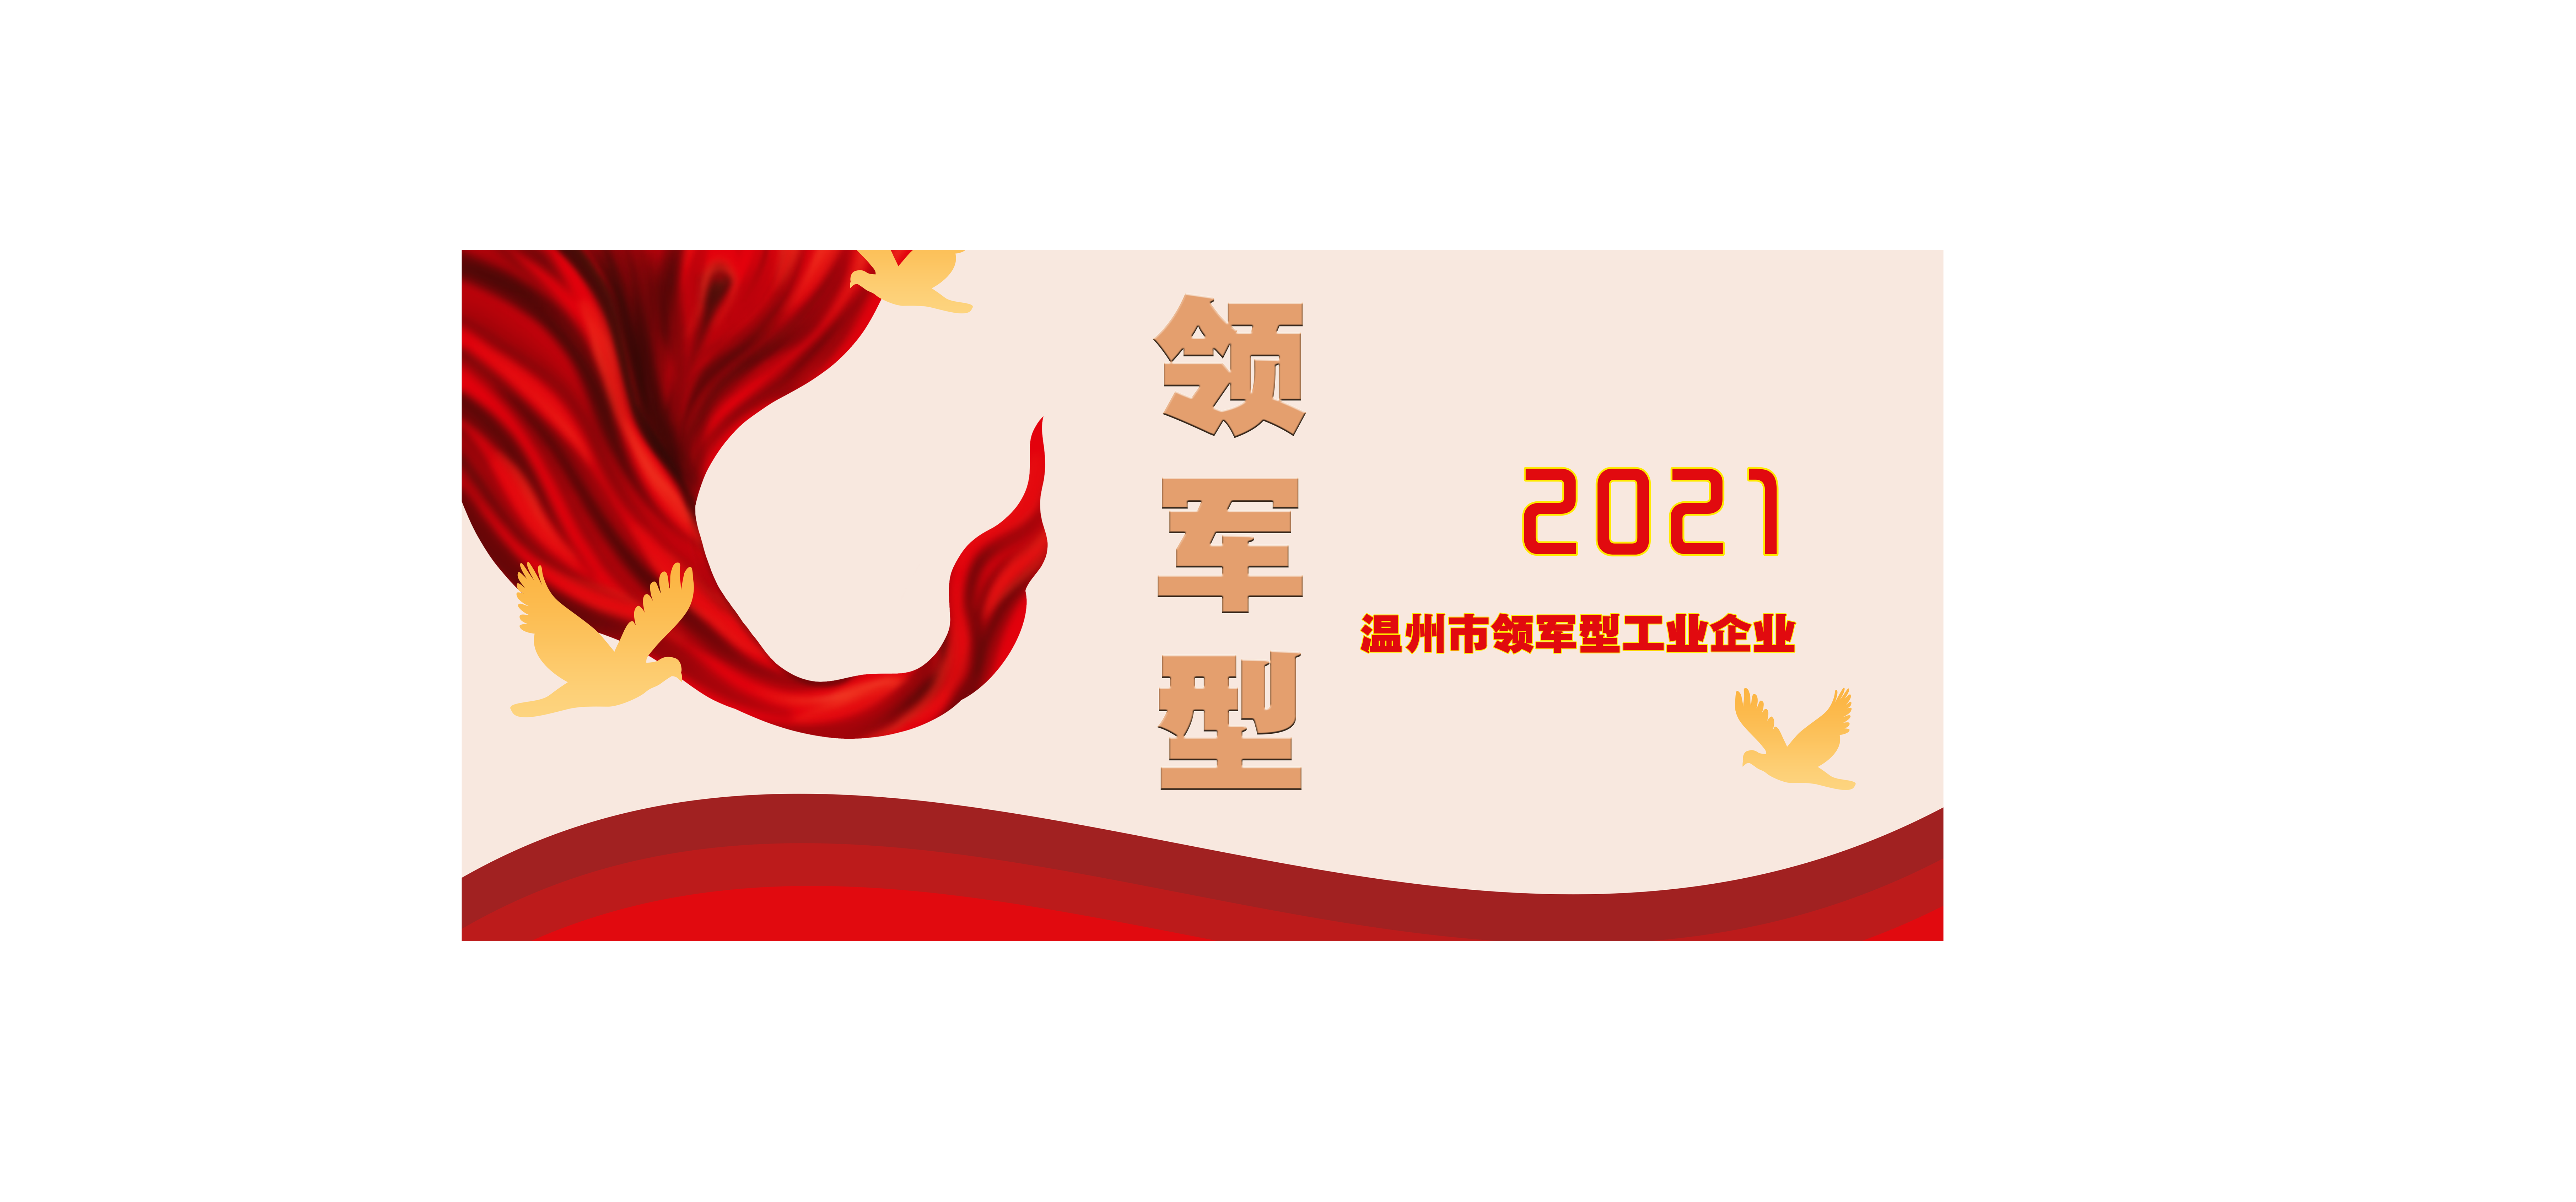 超达集团荣获2021年温州市领军型企业提名